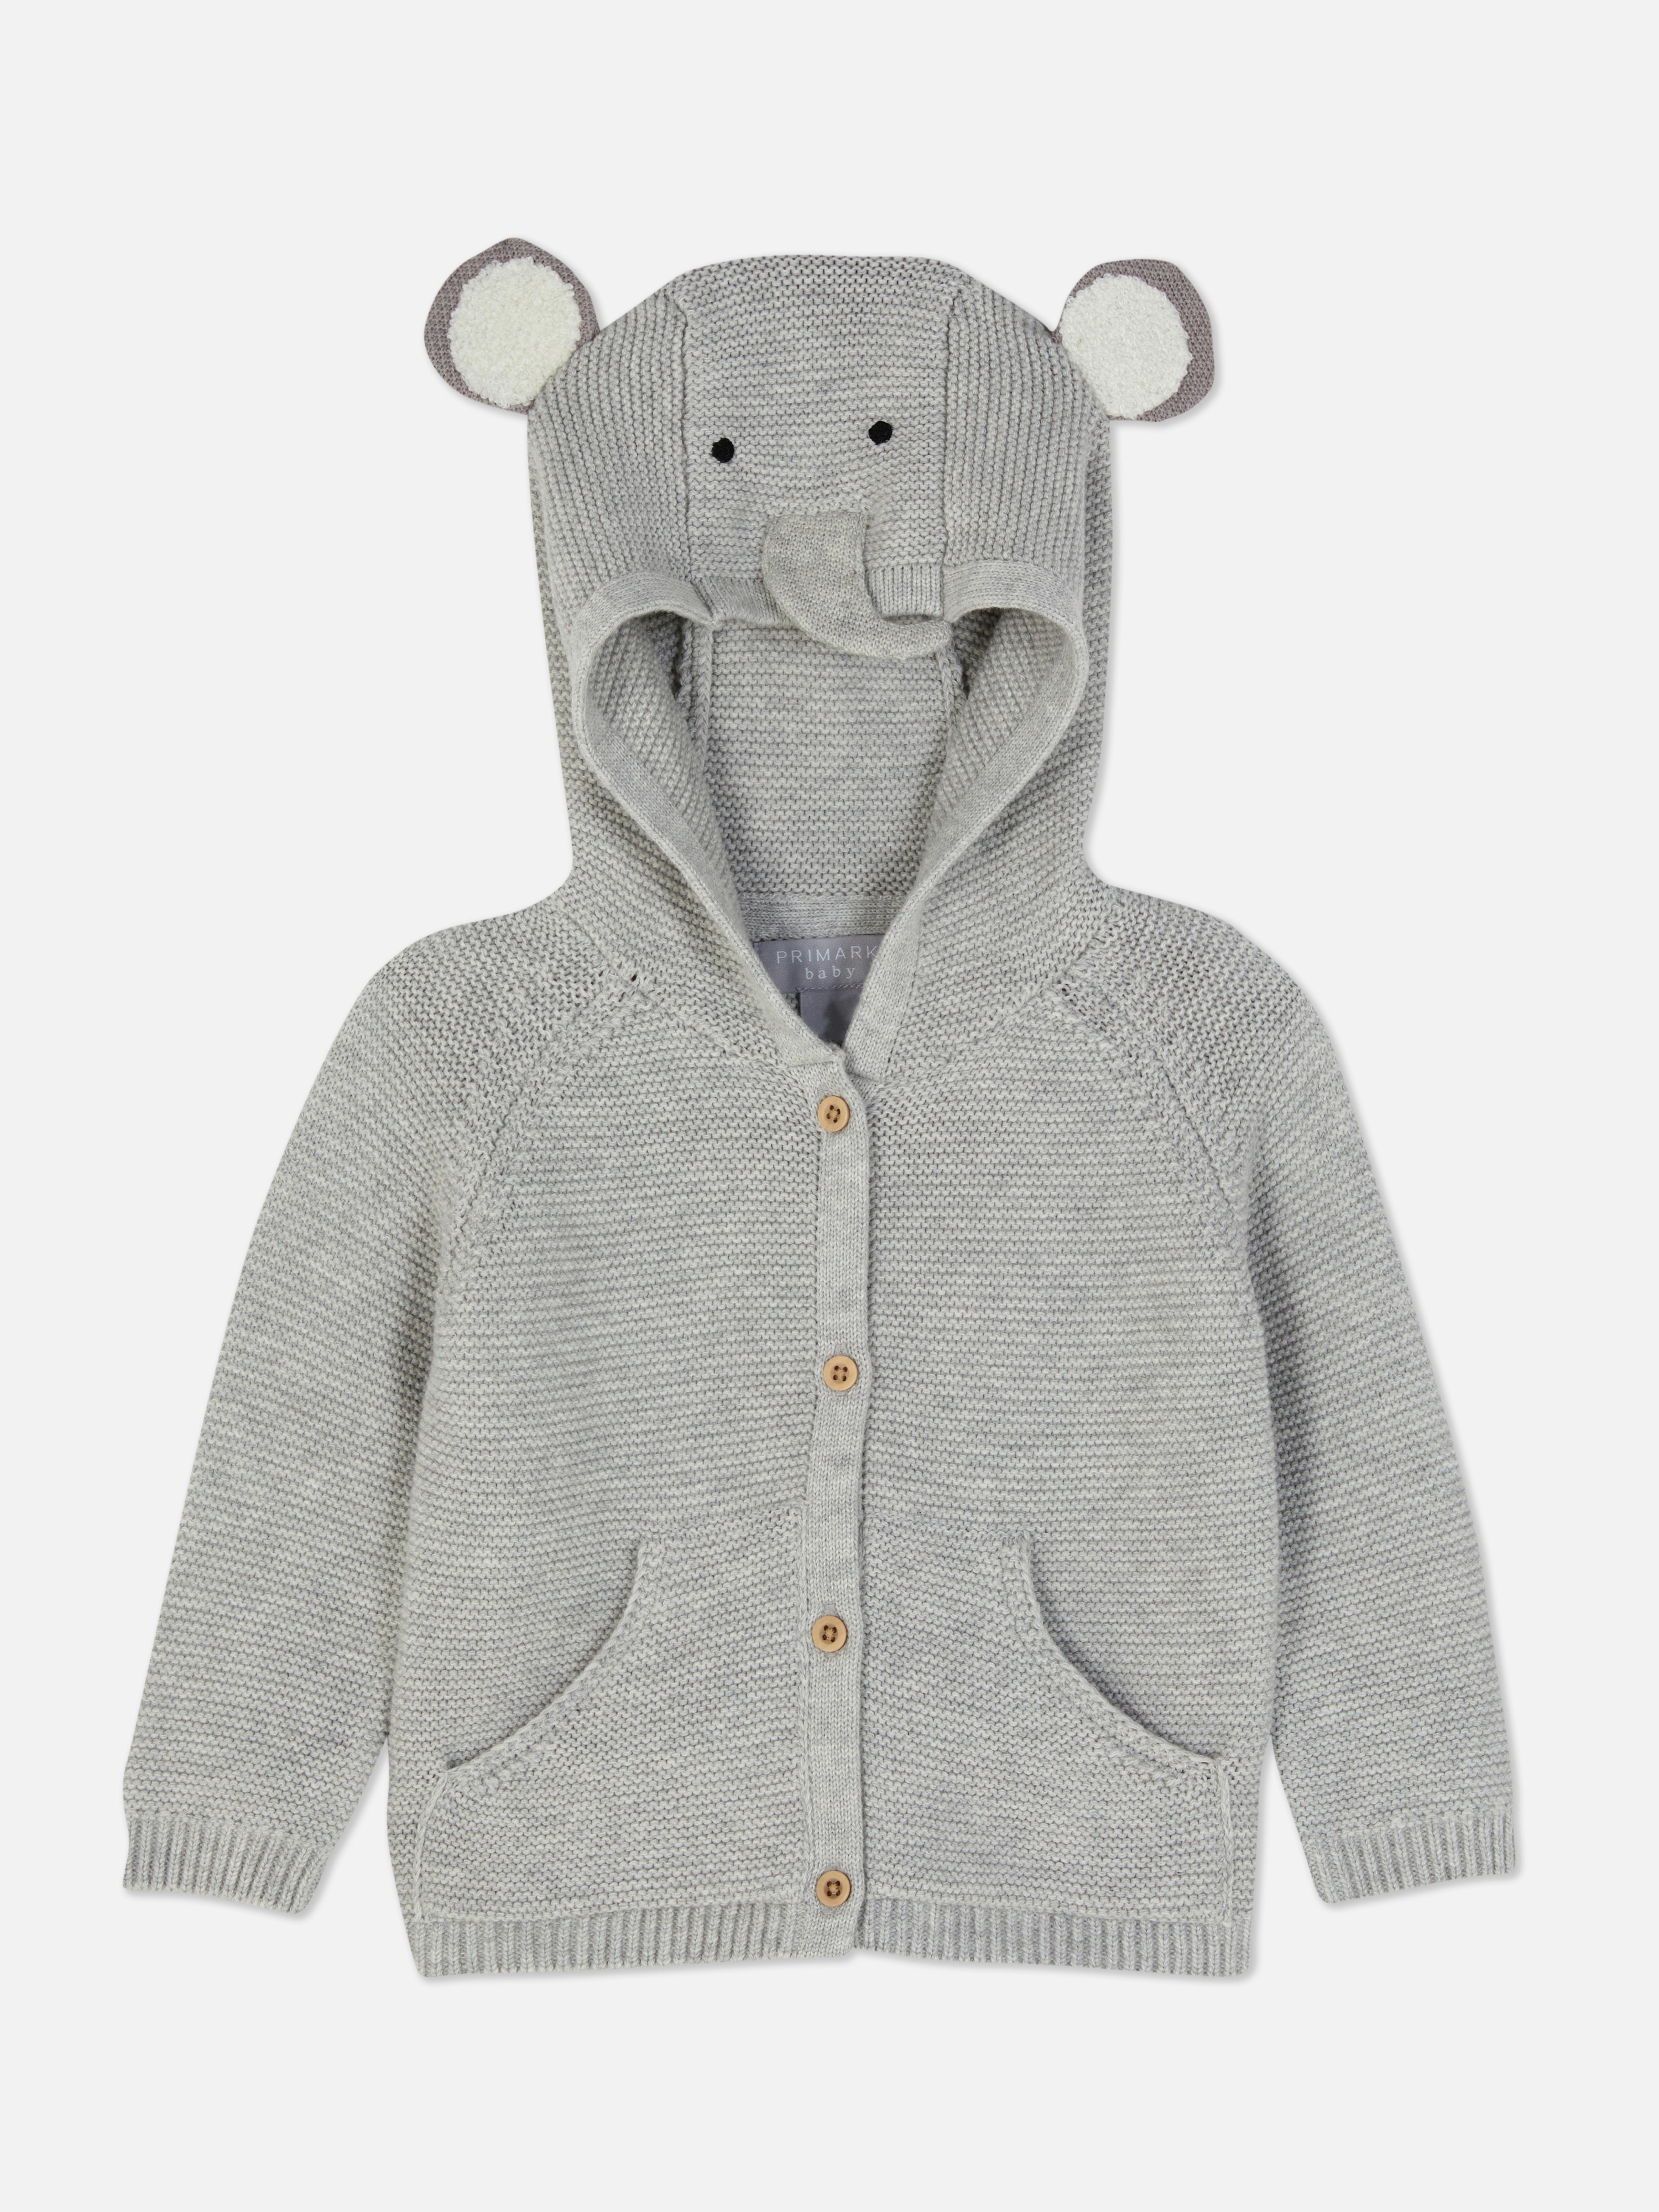 Elephant Hooded University Cardigan